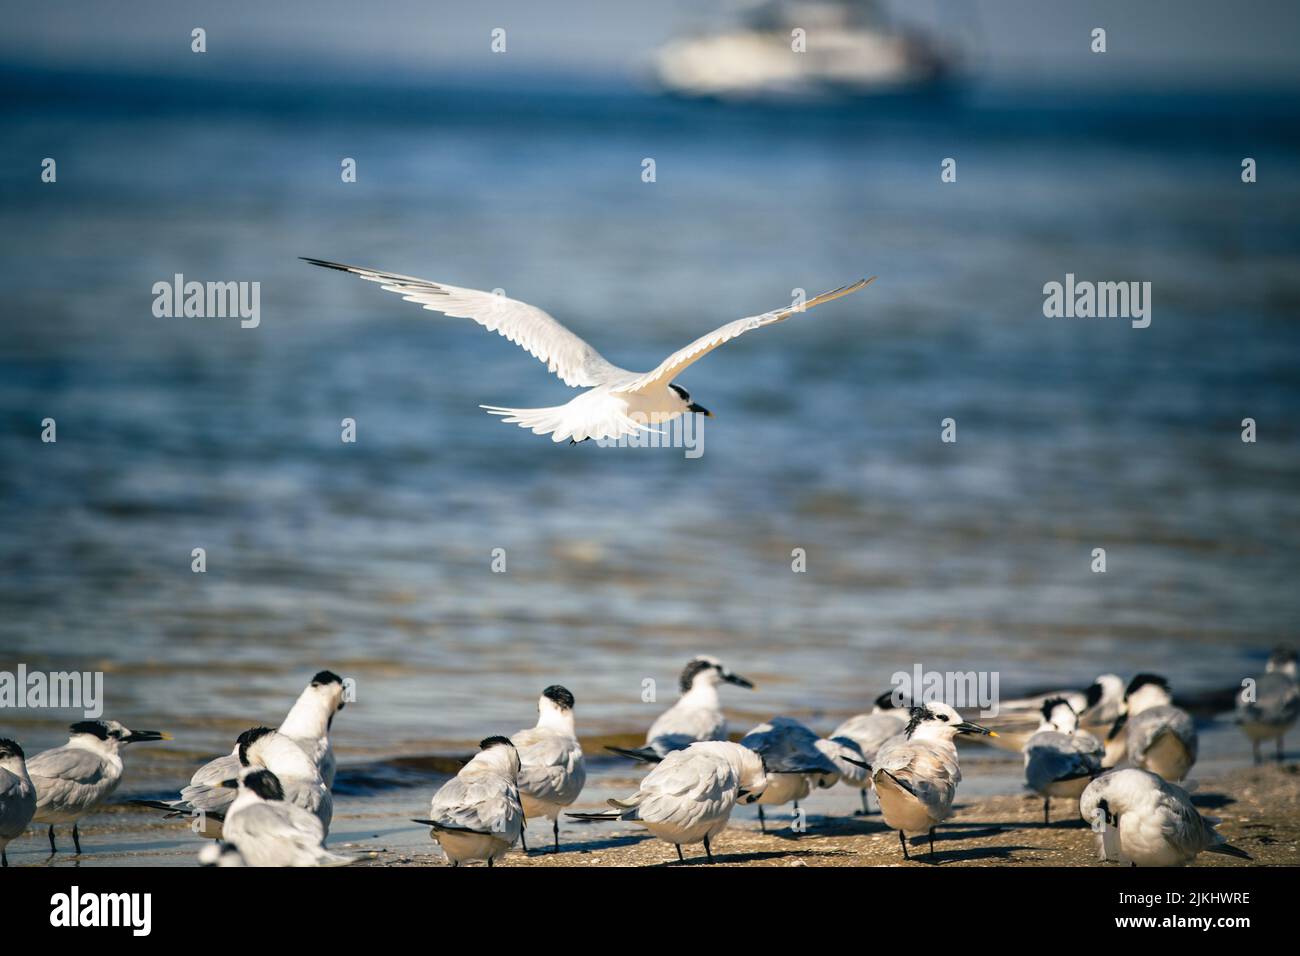 Un bellissimo scatto di un uccello di terna con le gabbiano che vola in alto su un gruppo di uccelli di terna con le gabbiano sulla spiaggia vicino all'acqua Foto Stock